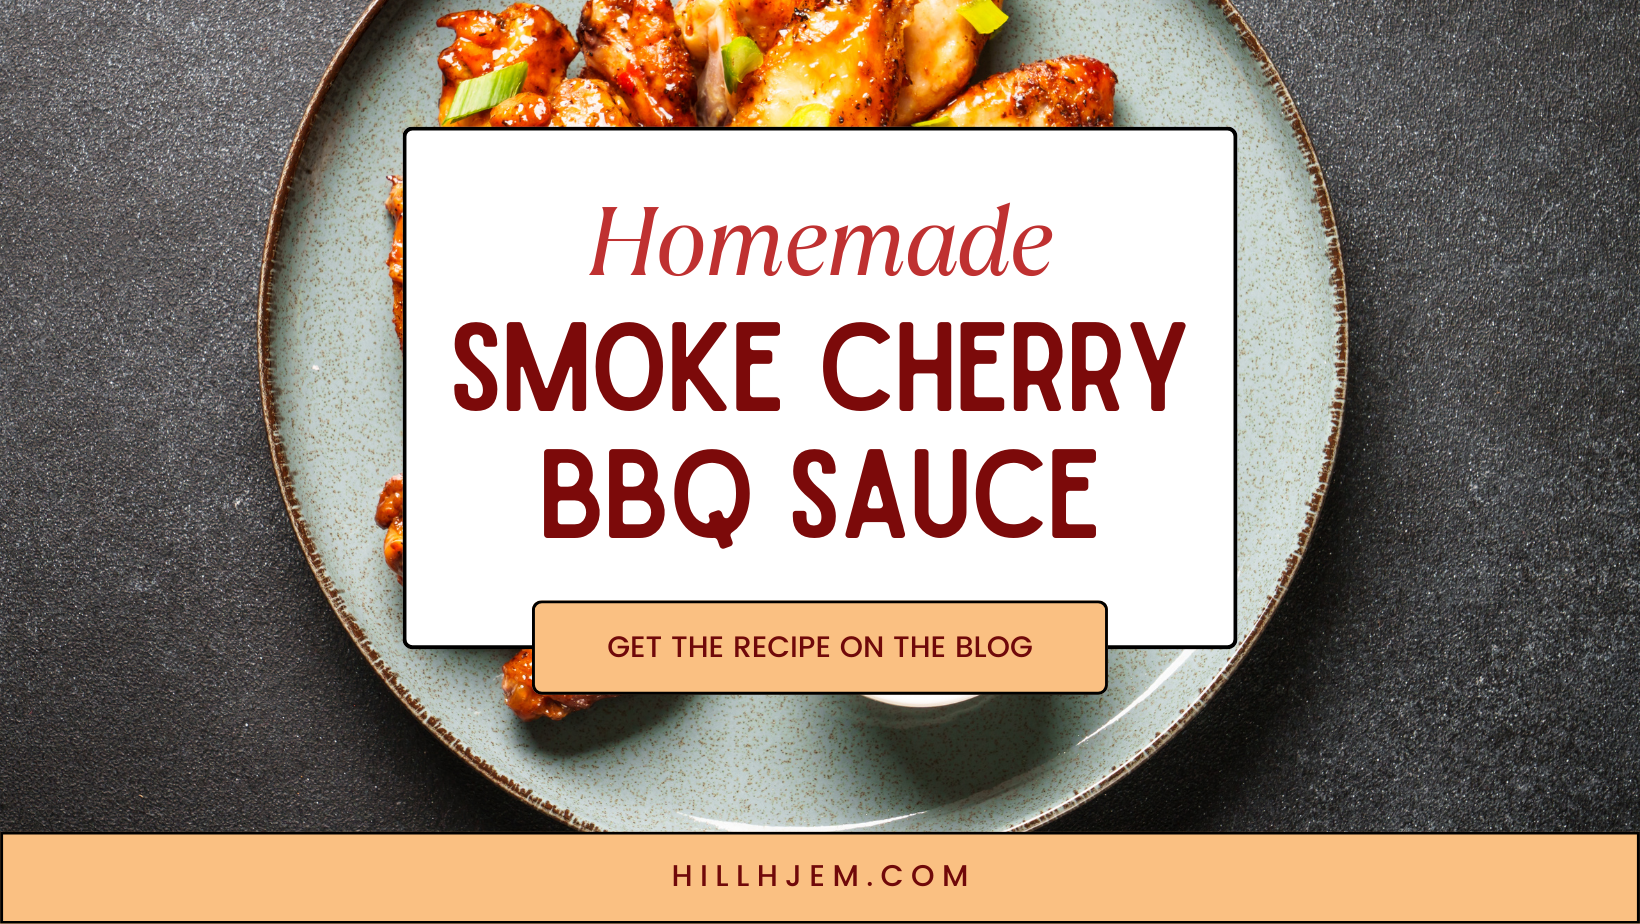 Homemade Smoke Cherry BBQ Sauce